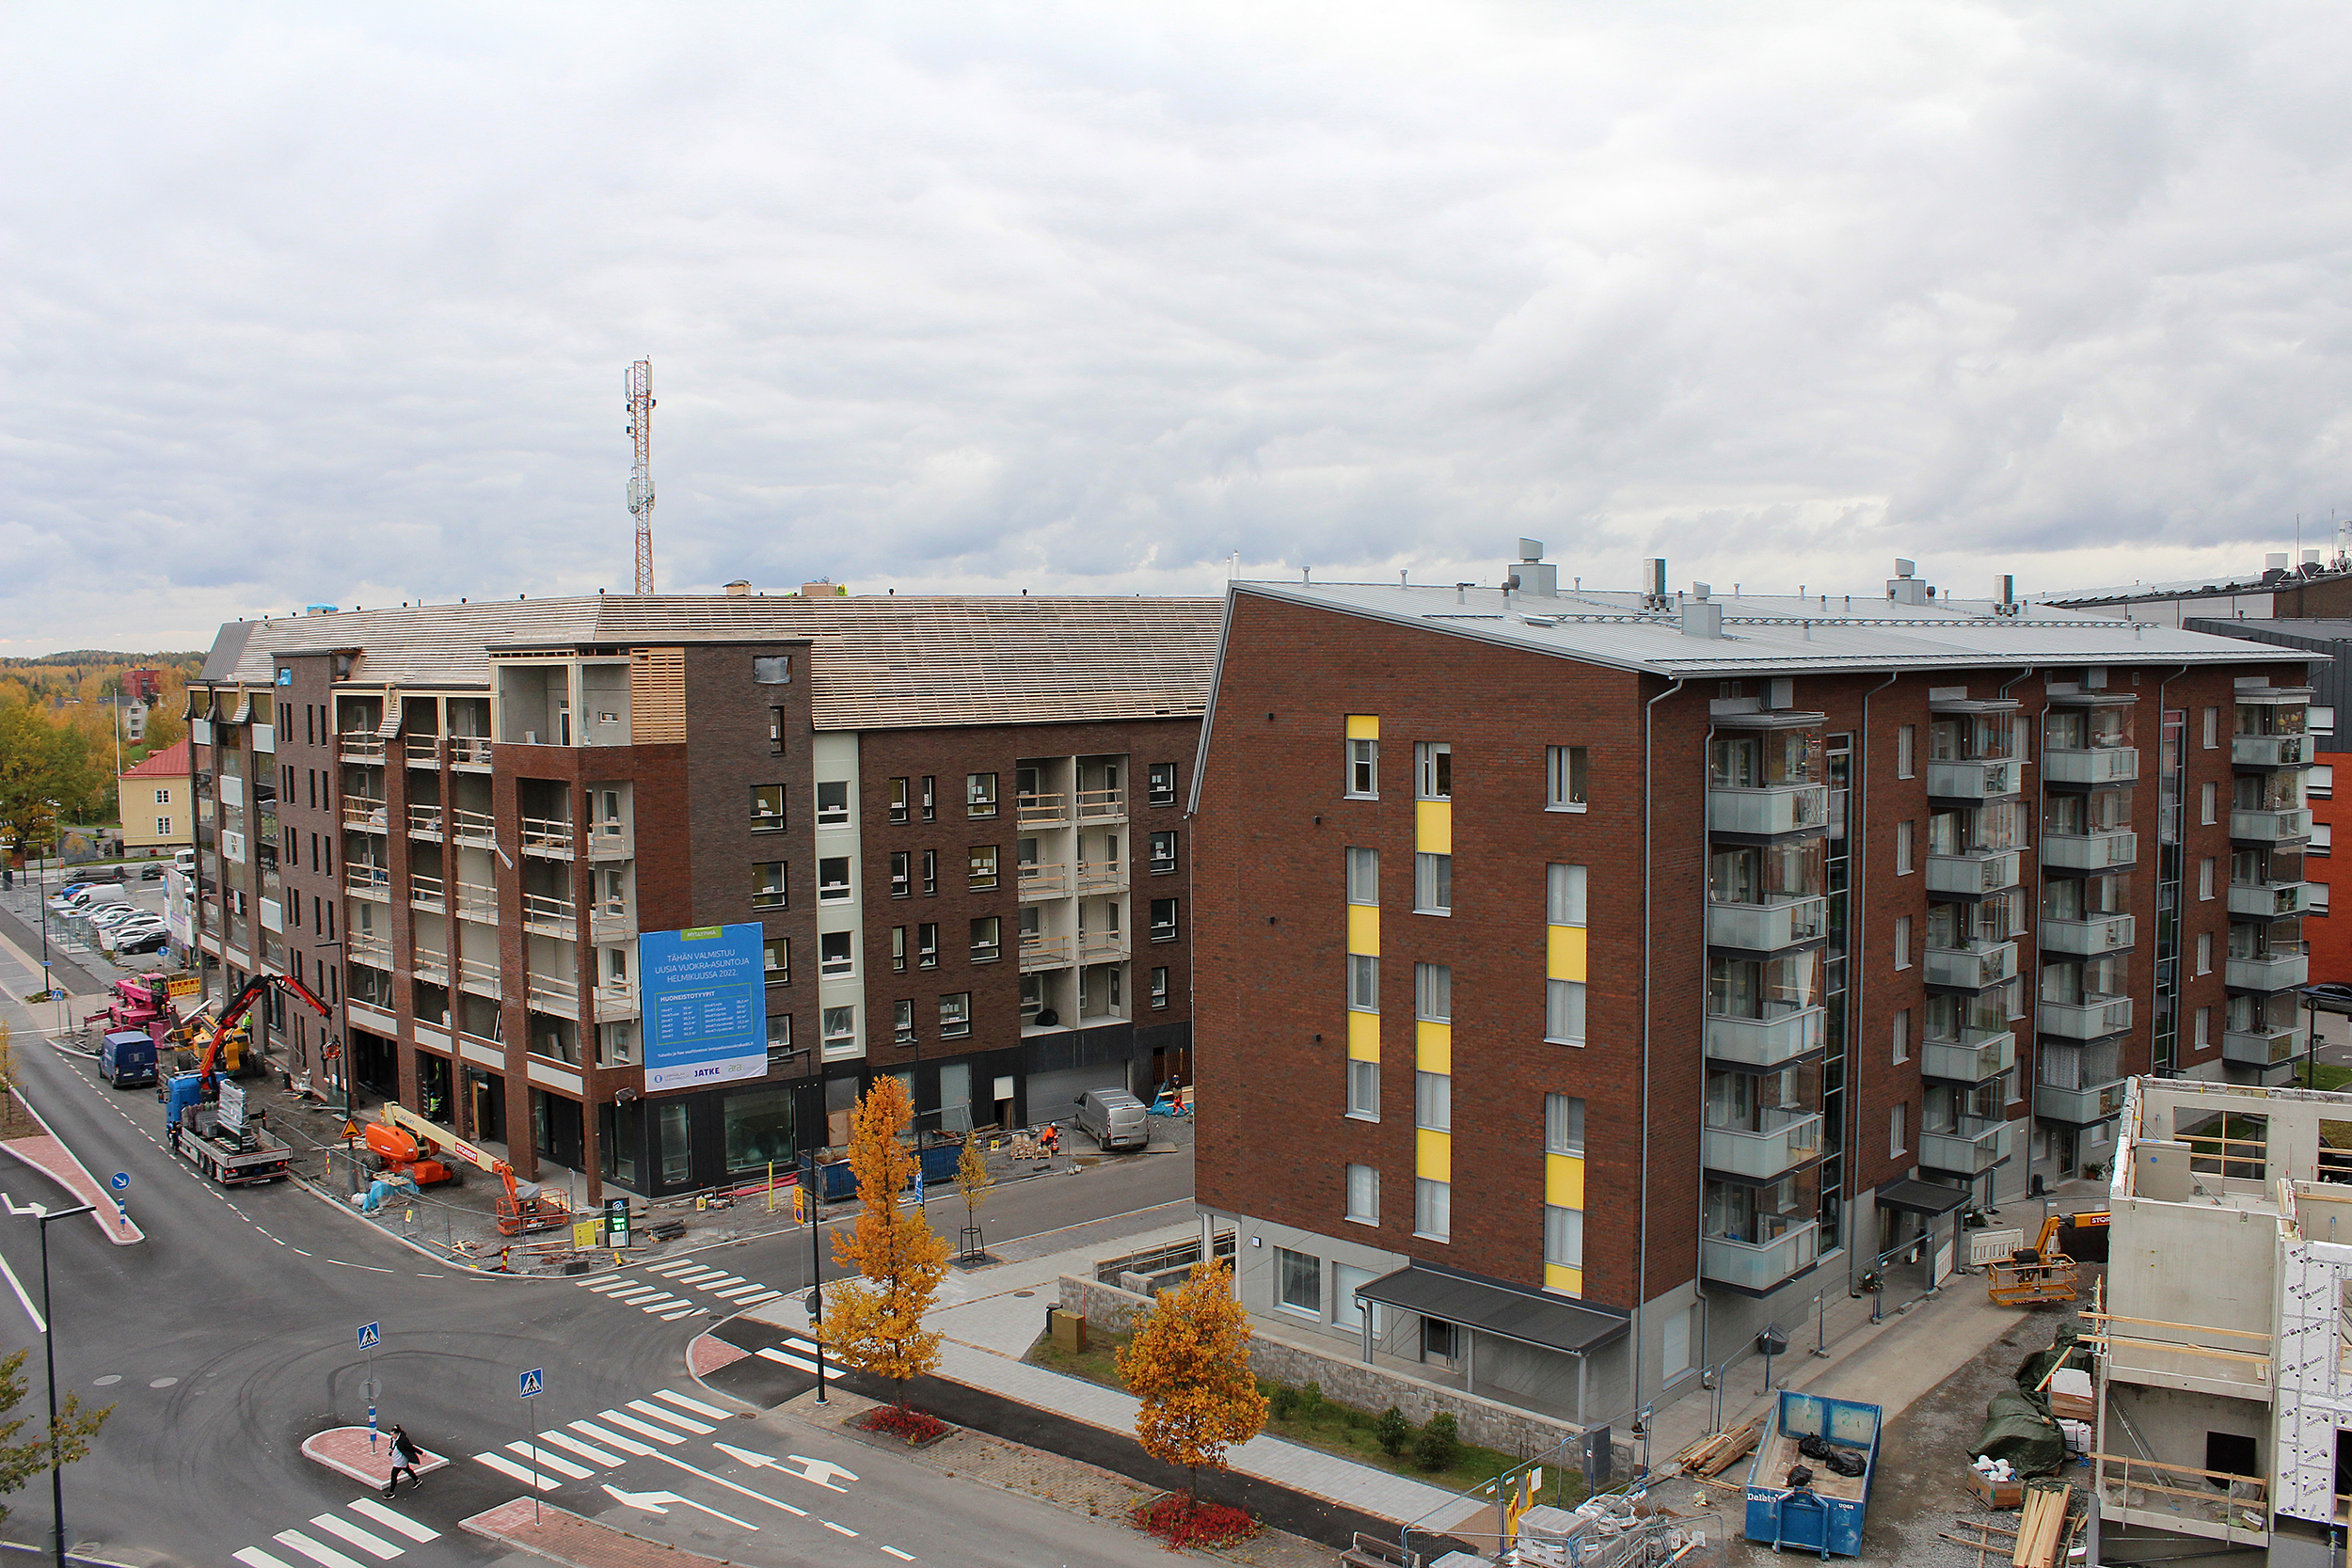 Tampereen kaupunkiseutu kerää kokemuksia keskustojen kehittämistarpeista – vastaa kyselyyn